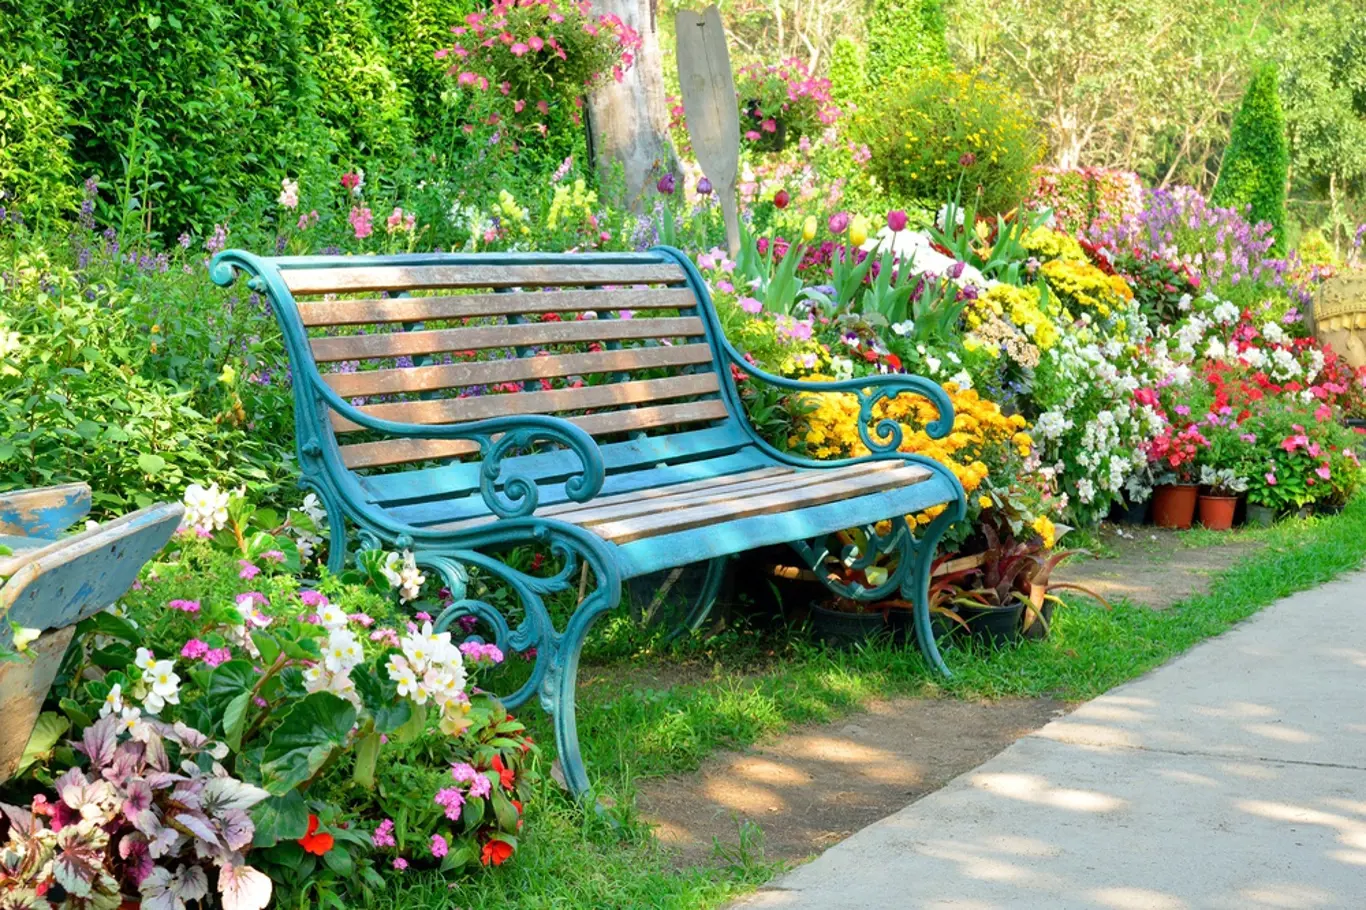 Zahradní lavička v pěkném zákoutí zahrady vybízí k posazení.